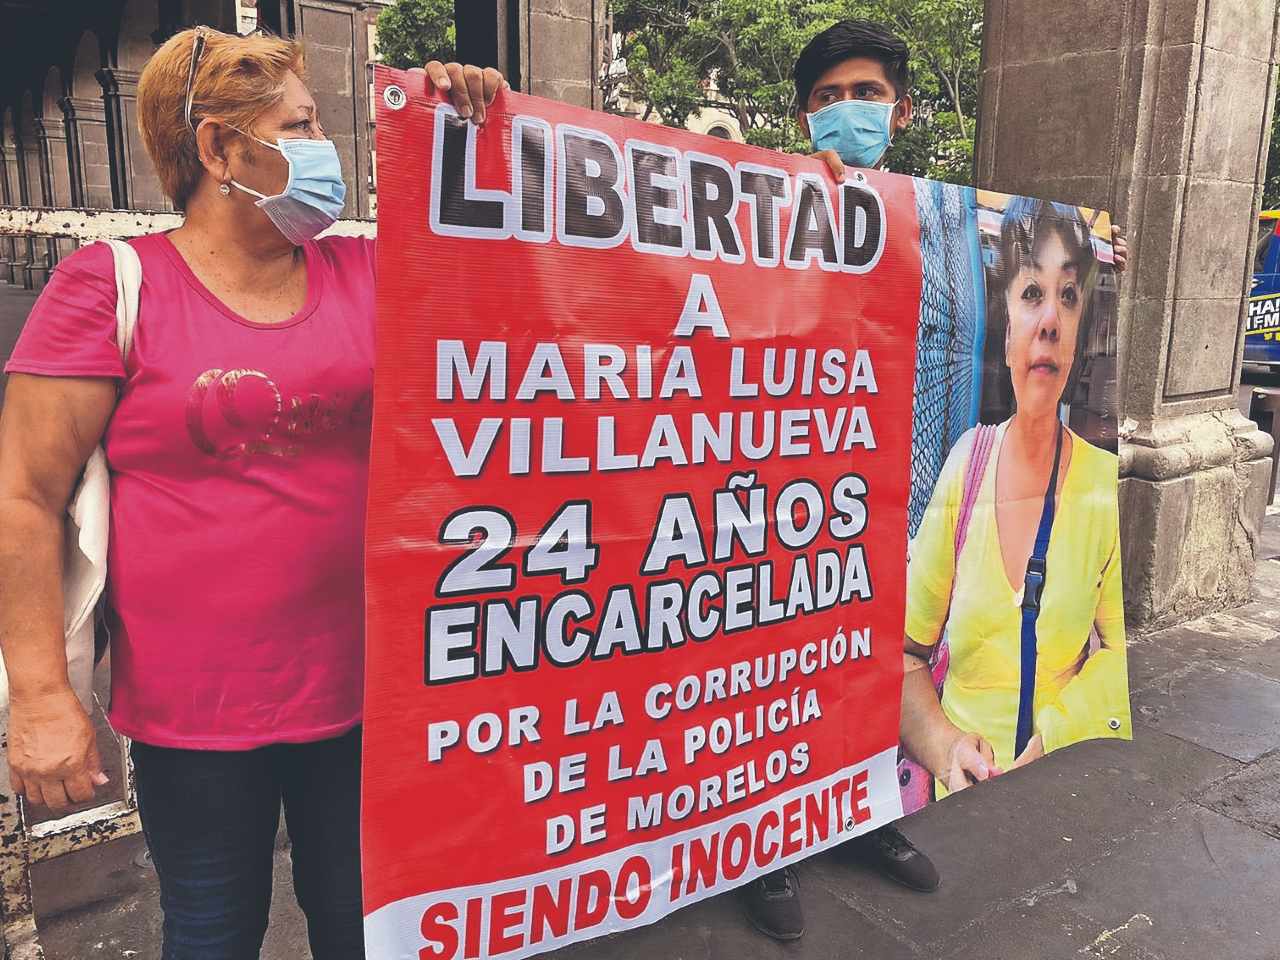 La acusaron de secuestro y lleva 24 años presa en Morelos, pero autoridades todavía checan qué pasó